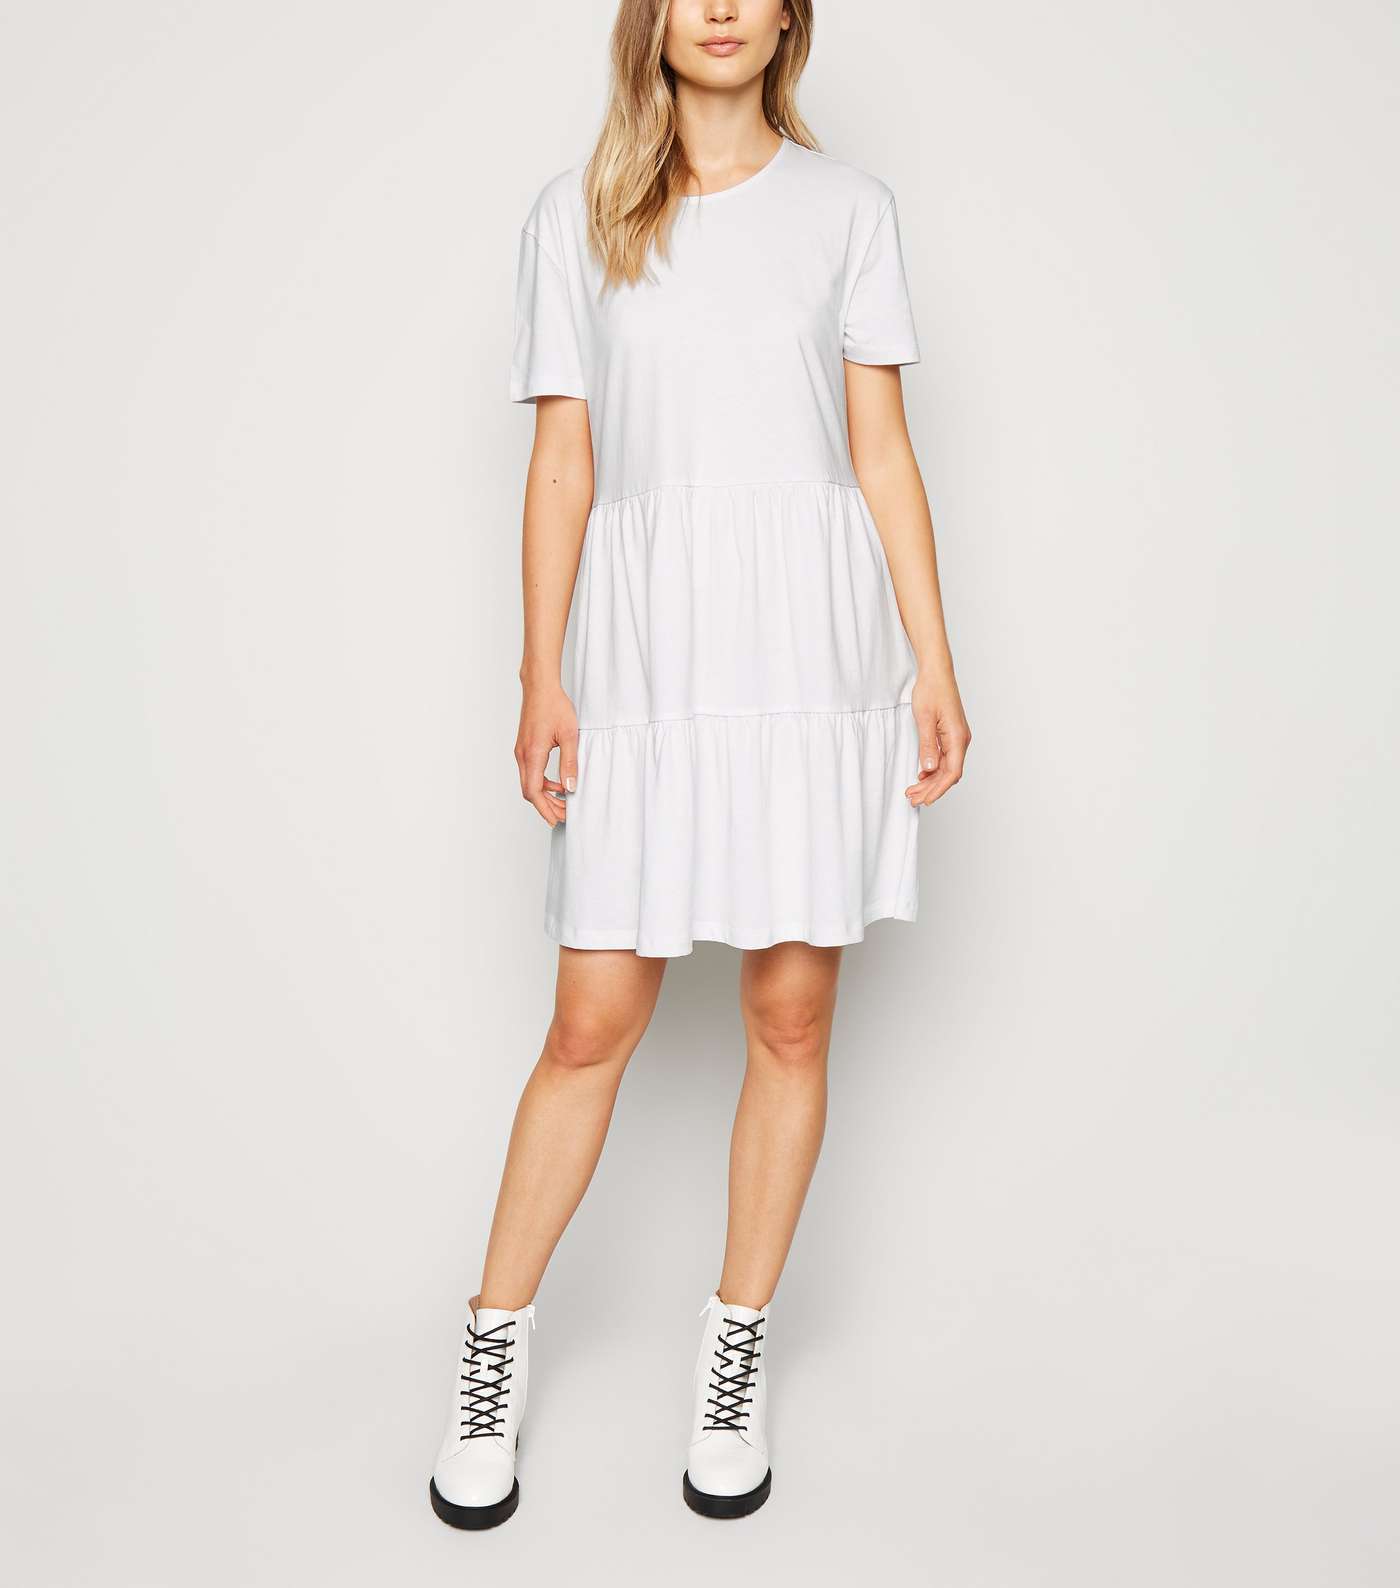 White Short Sleeve Cotton Smock Dress Image 2